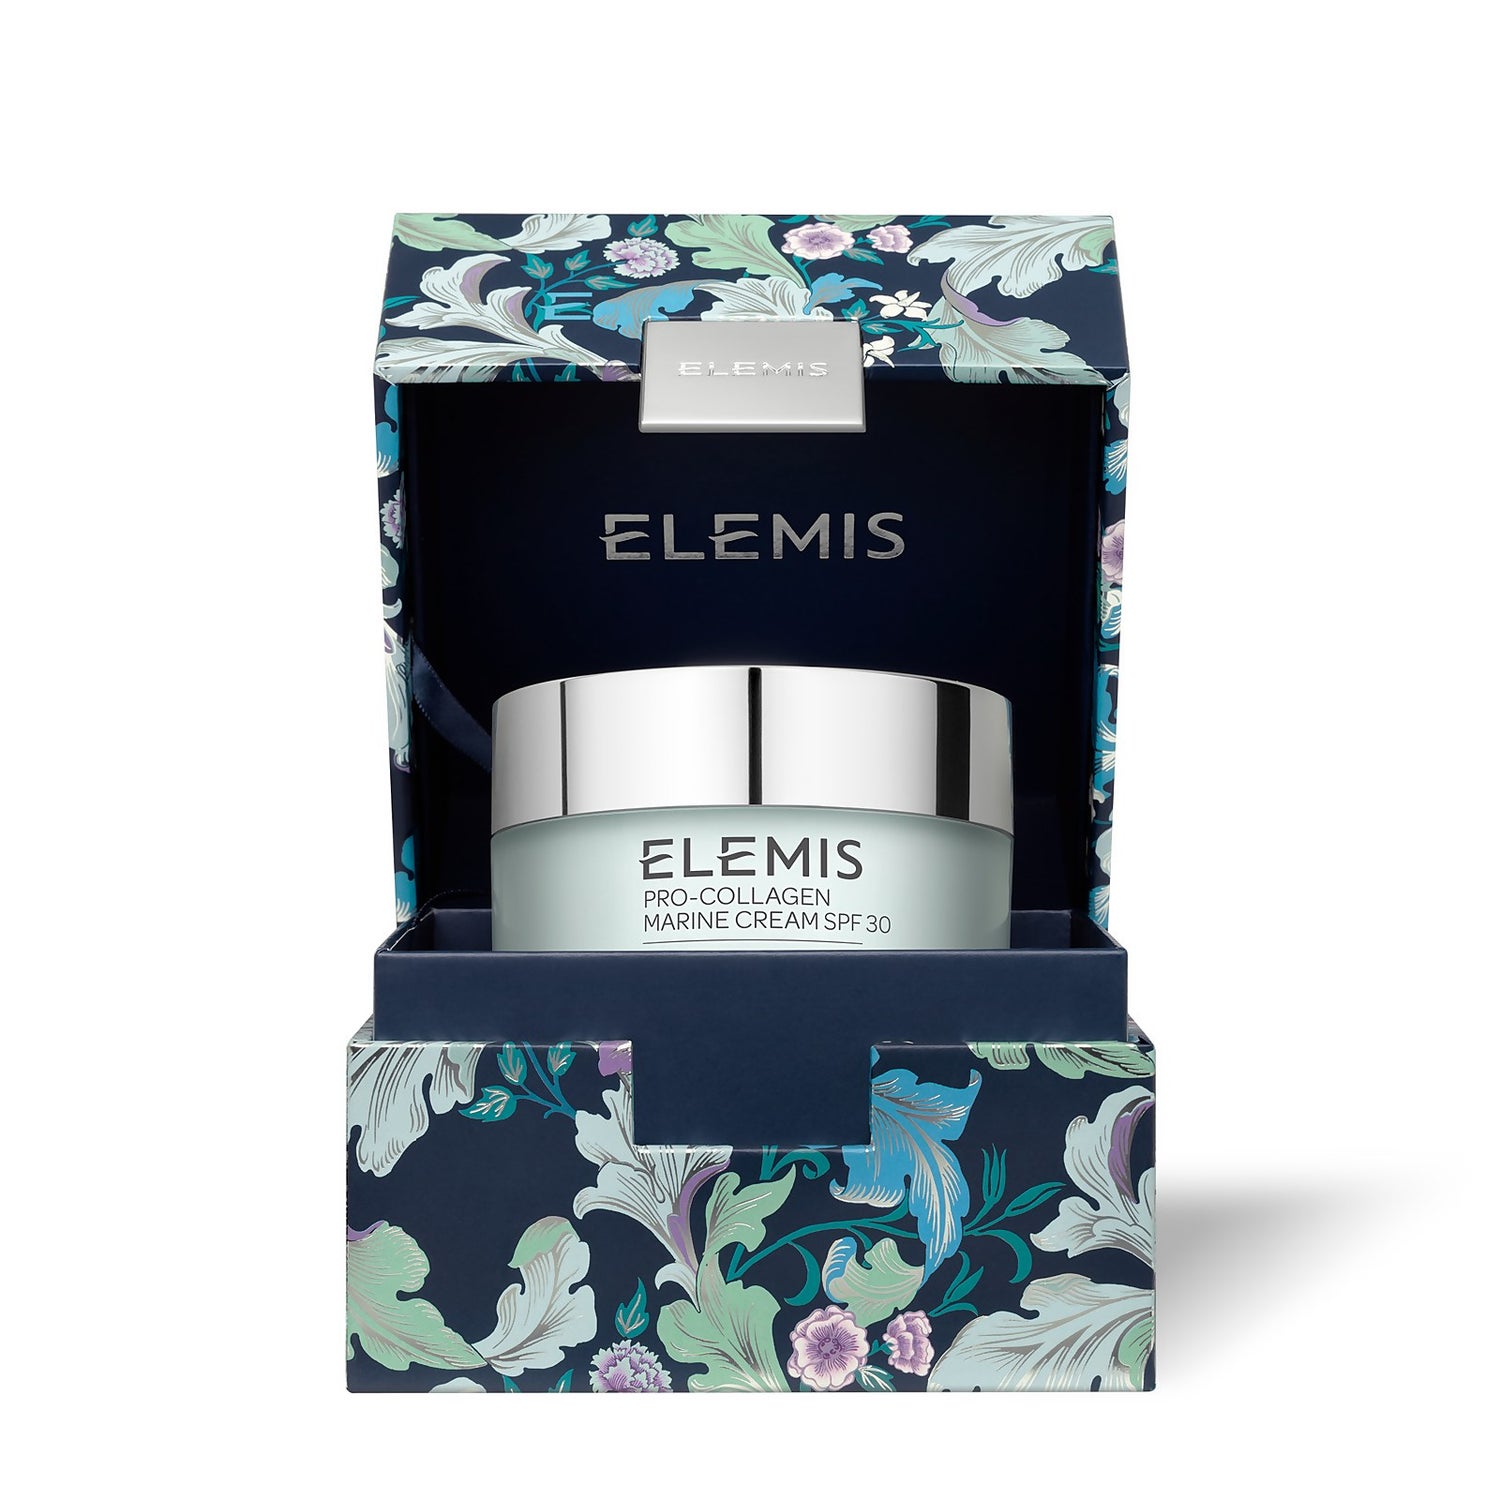 Elemis Limited Edition Pro-Collagen Marine Cream SPF 30 100ml (Worth $239)